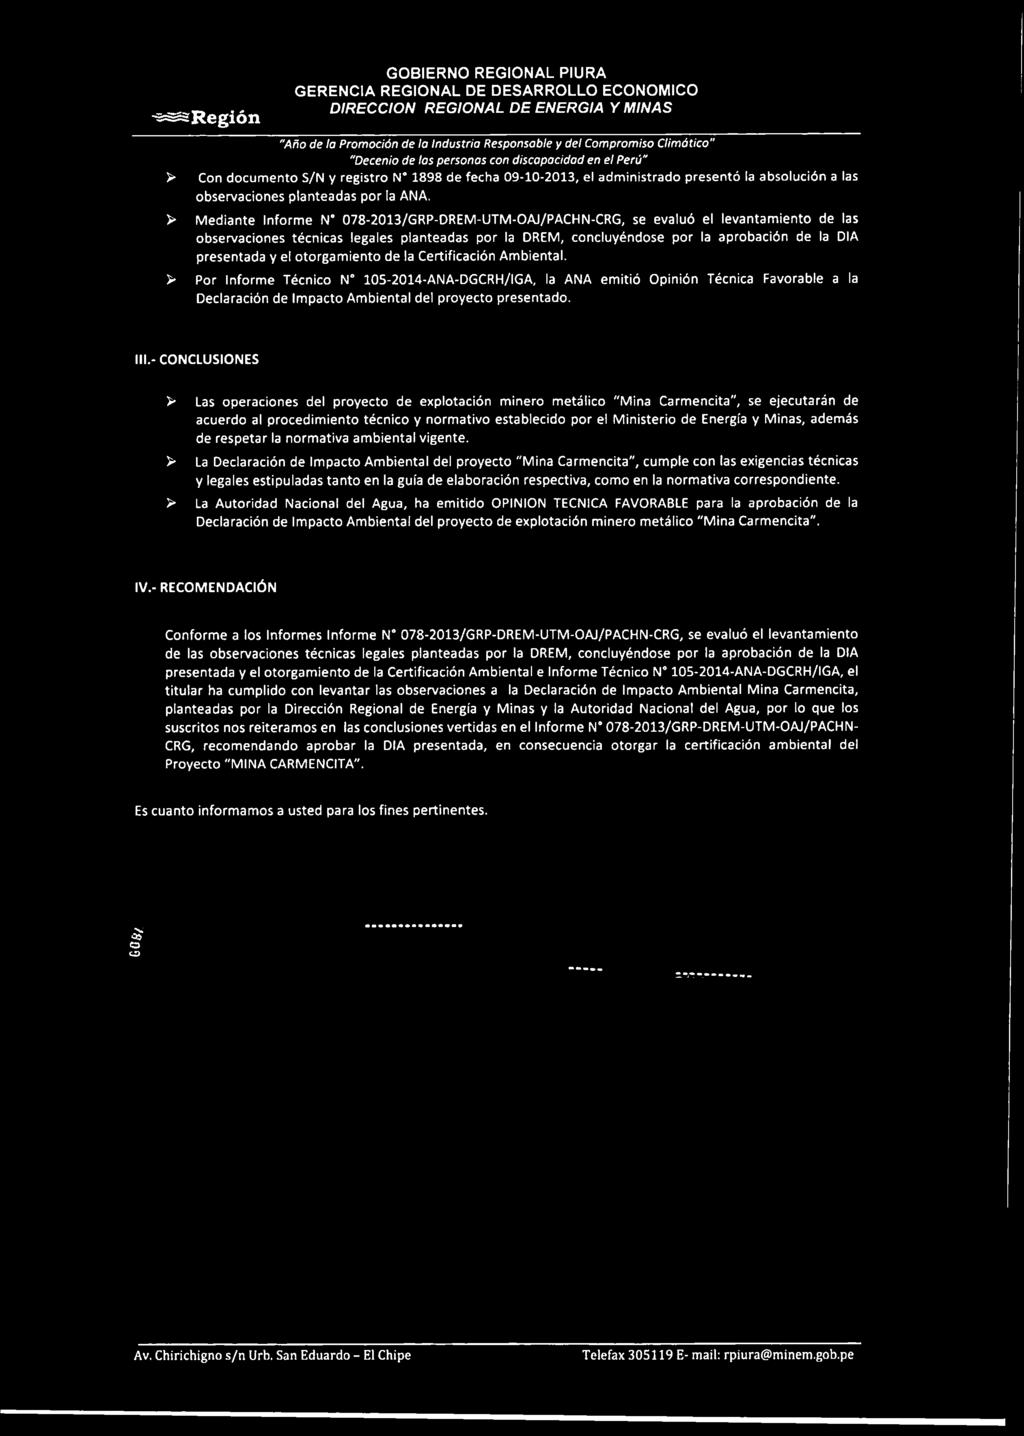 > Mediante Informe N 078-2013/GRP-DREM-UTM-OAJ/PACHN-CRG, se evaluó el levantamiento de las observaciones técnicas legales planteadas por la DREM, concluyéndose por la aprobación de la DIA presentada